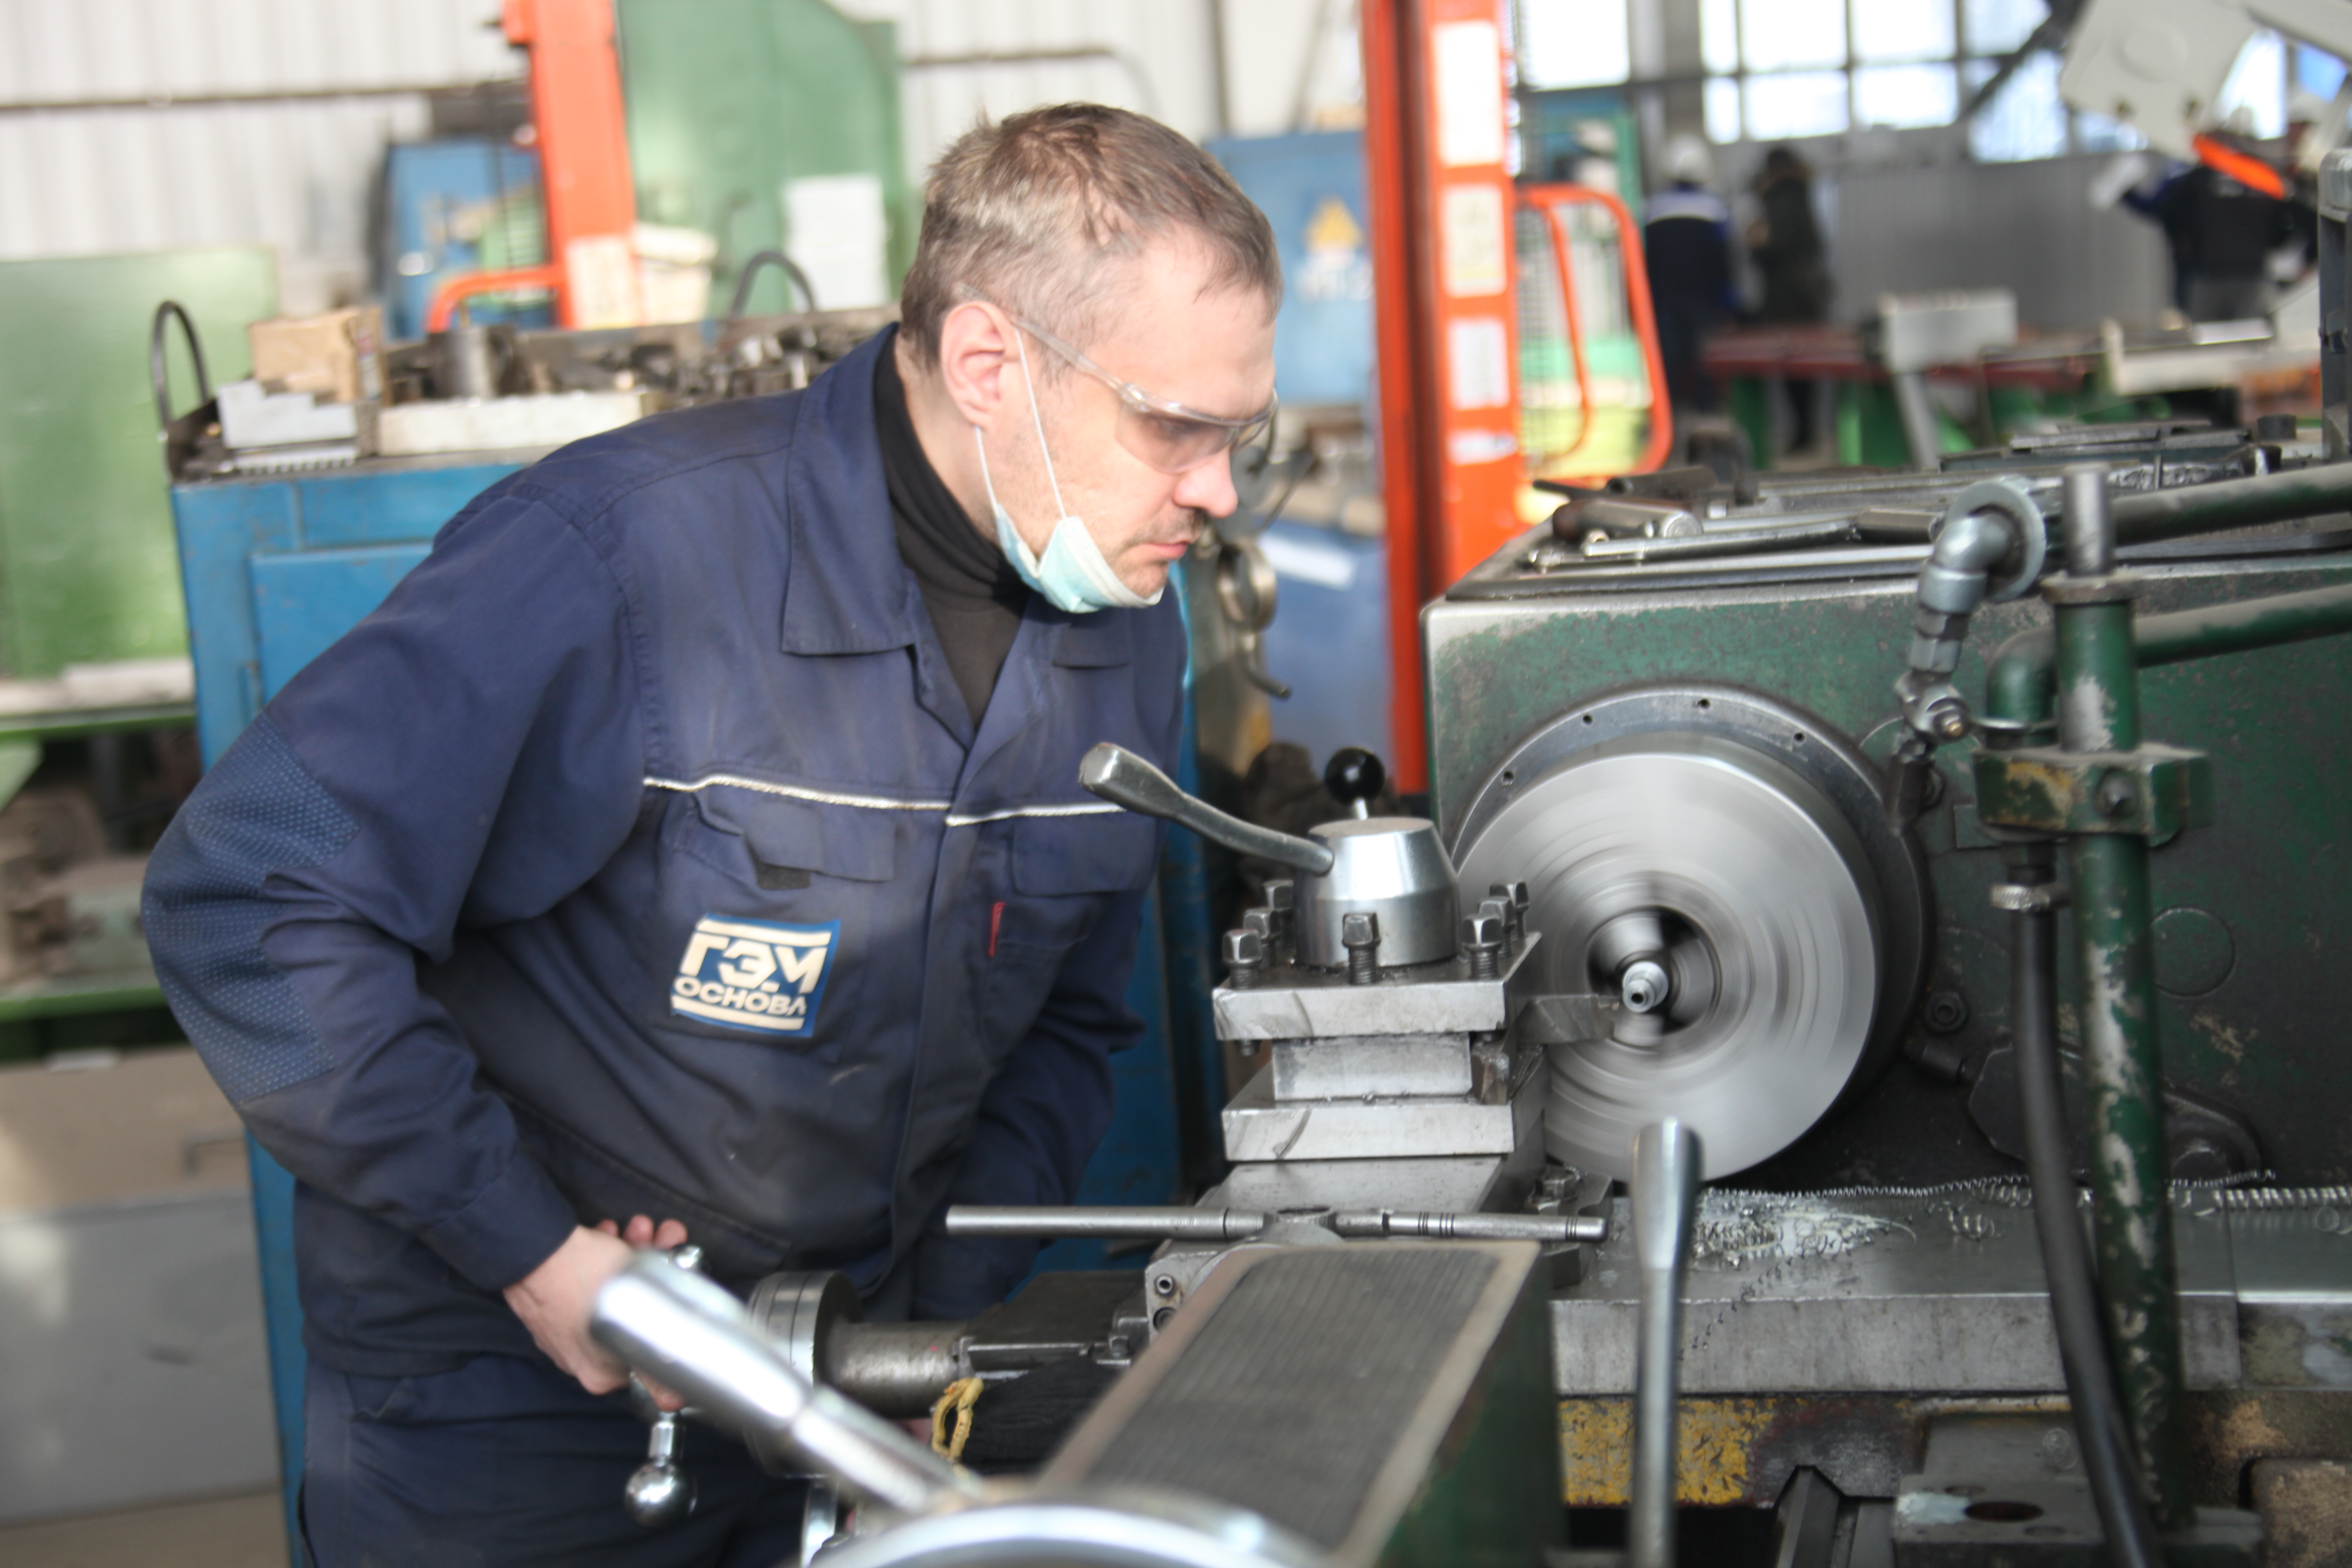 Региональный центр компетенций Иркутской области способствовал оптимизации работы цеха металлоконструкций Братского монтажного управления «Гидроэлектромонтаж» («БМУ ГЭМ»).